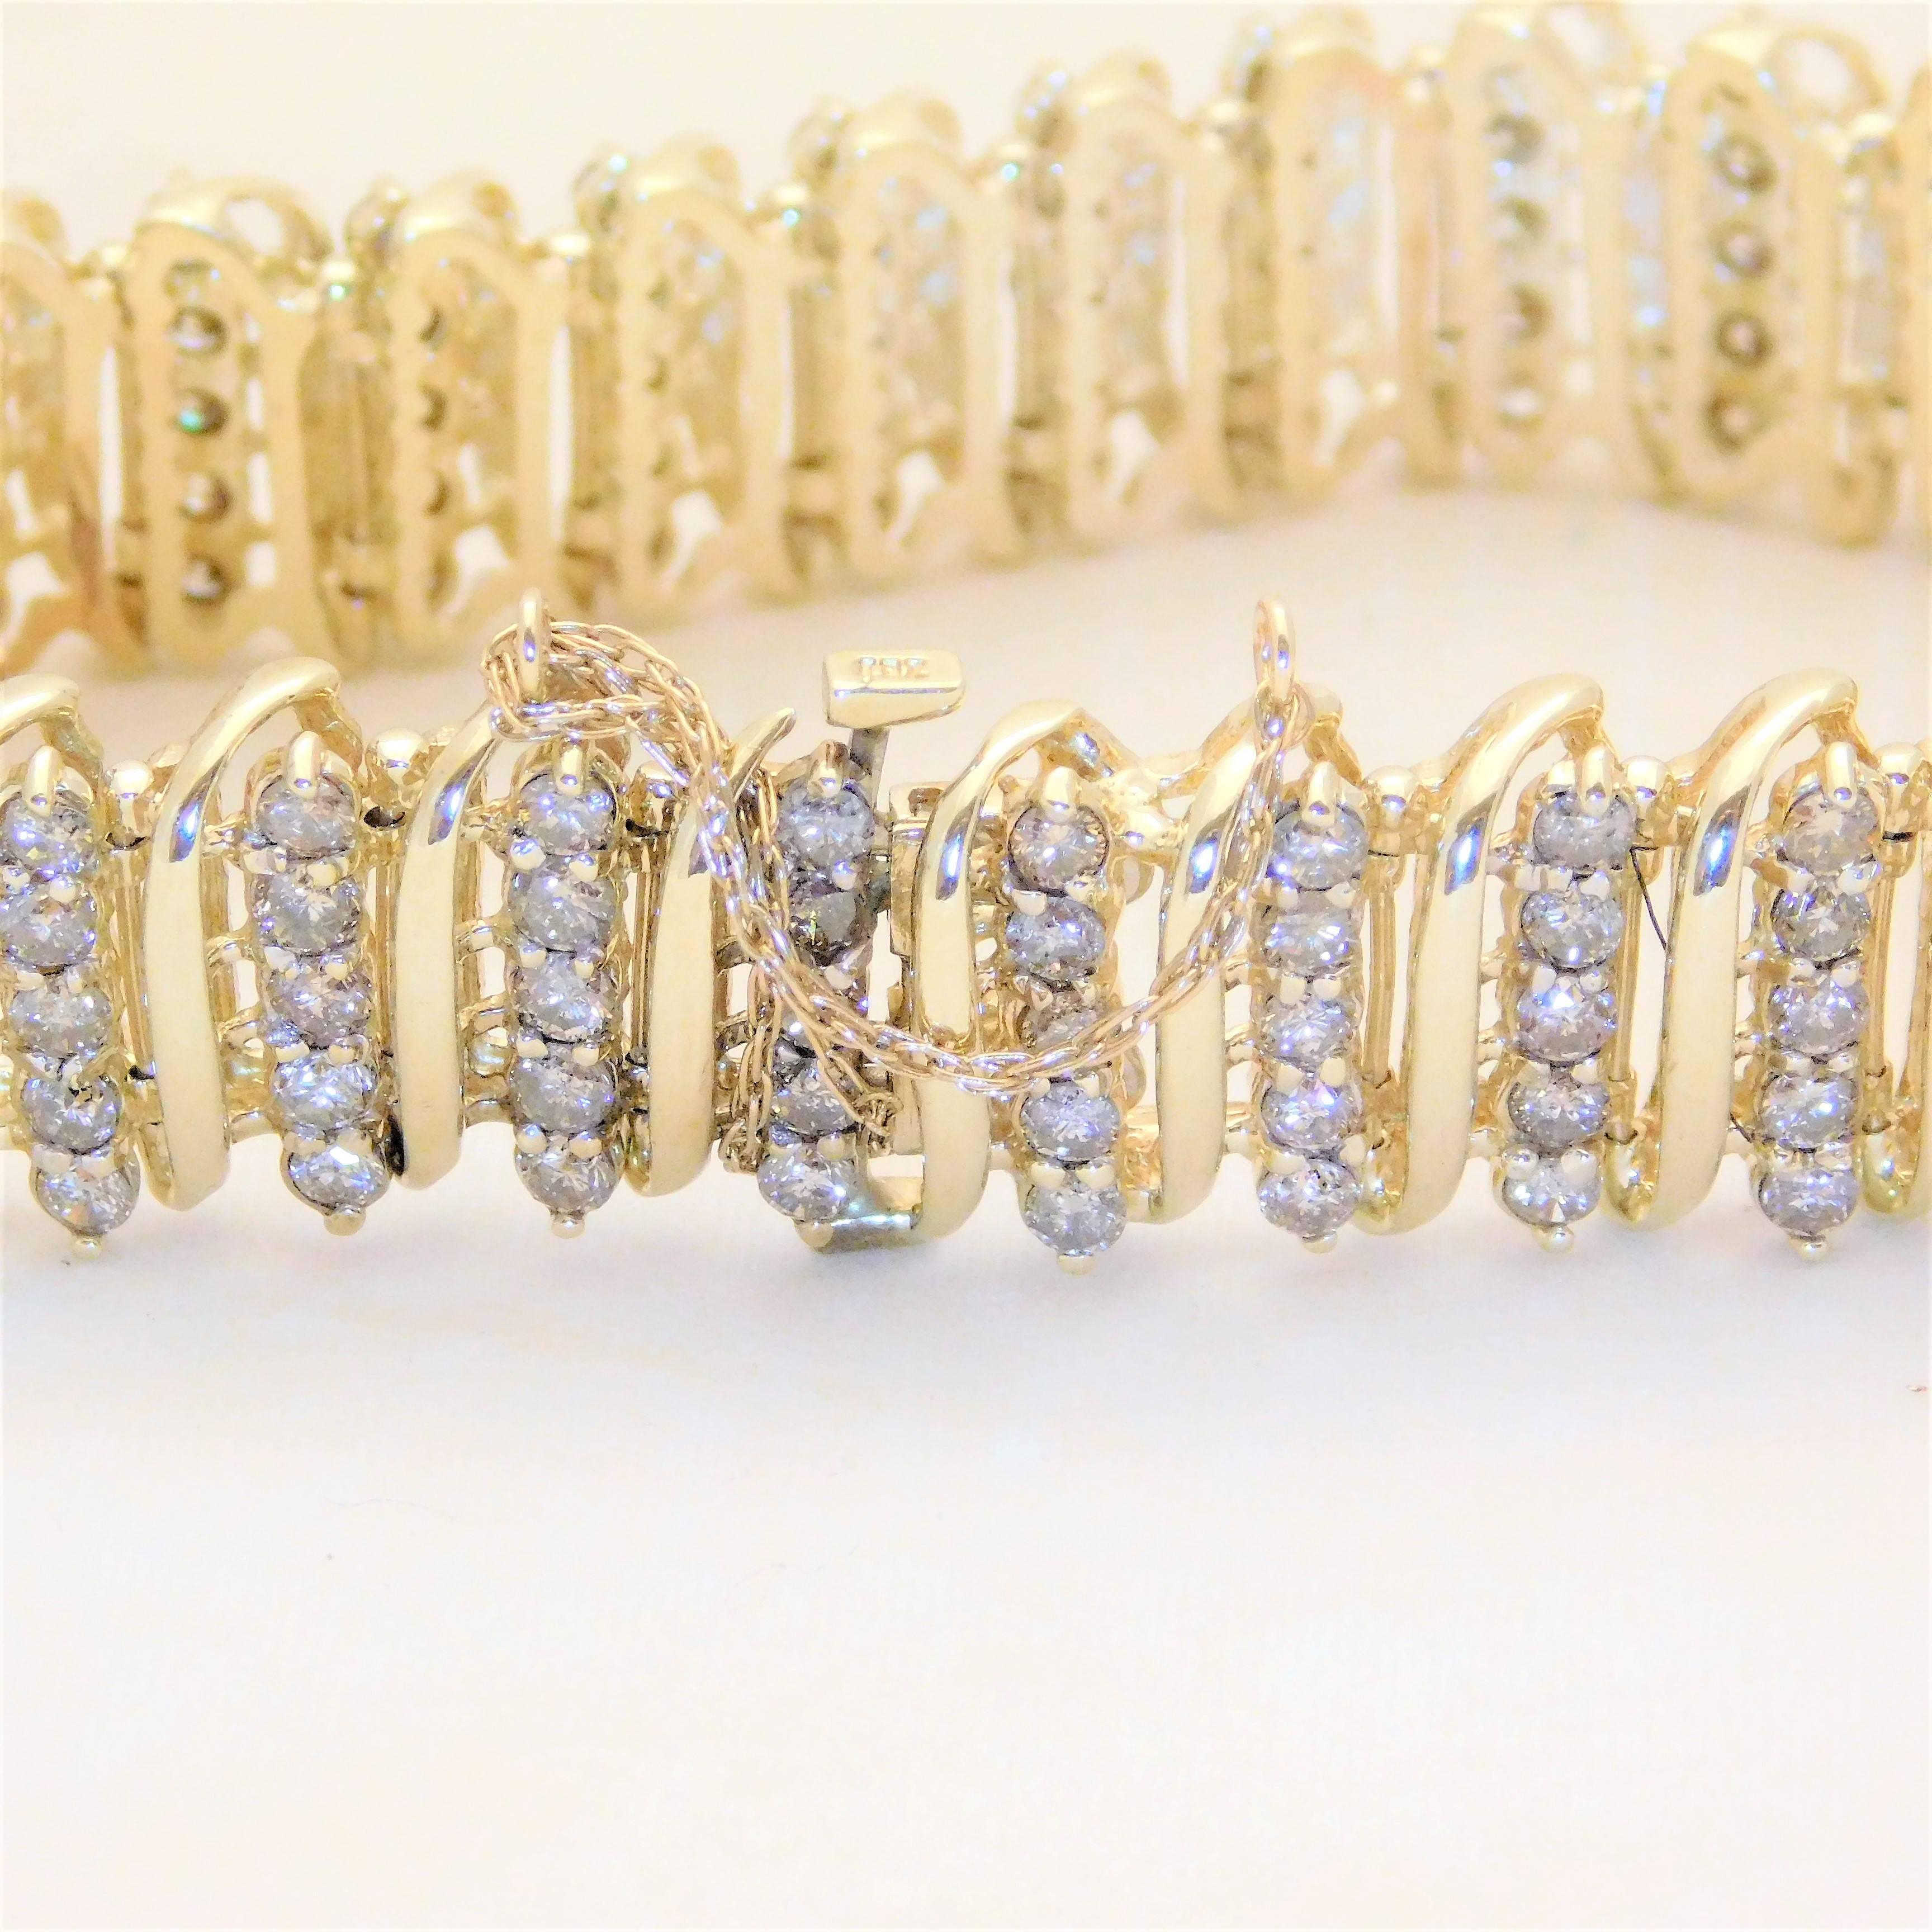 Women's Vintage 9 Carat Champagne Colored Diamond Bracelet For Sale